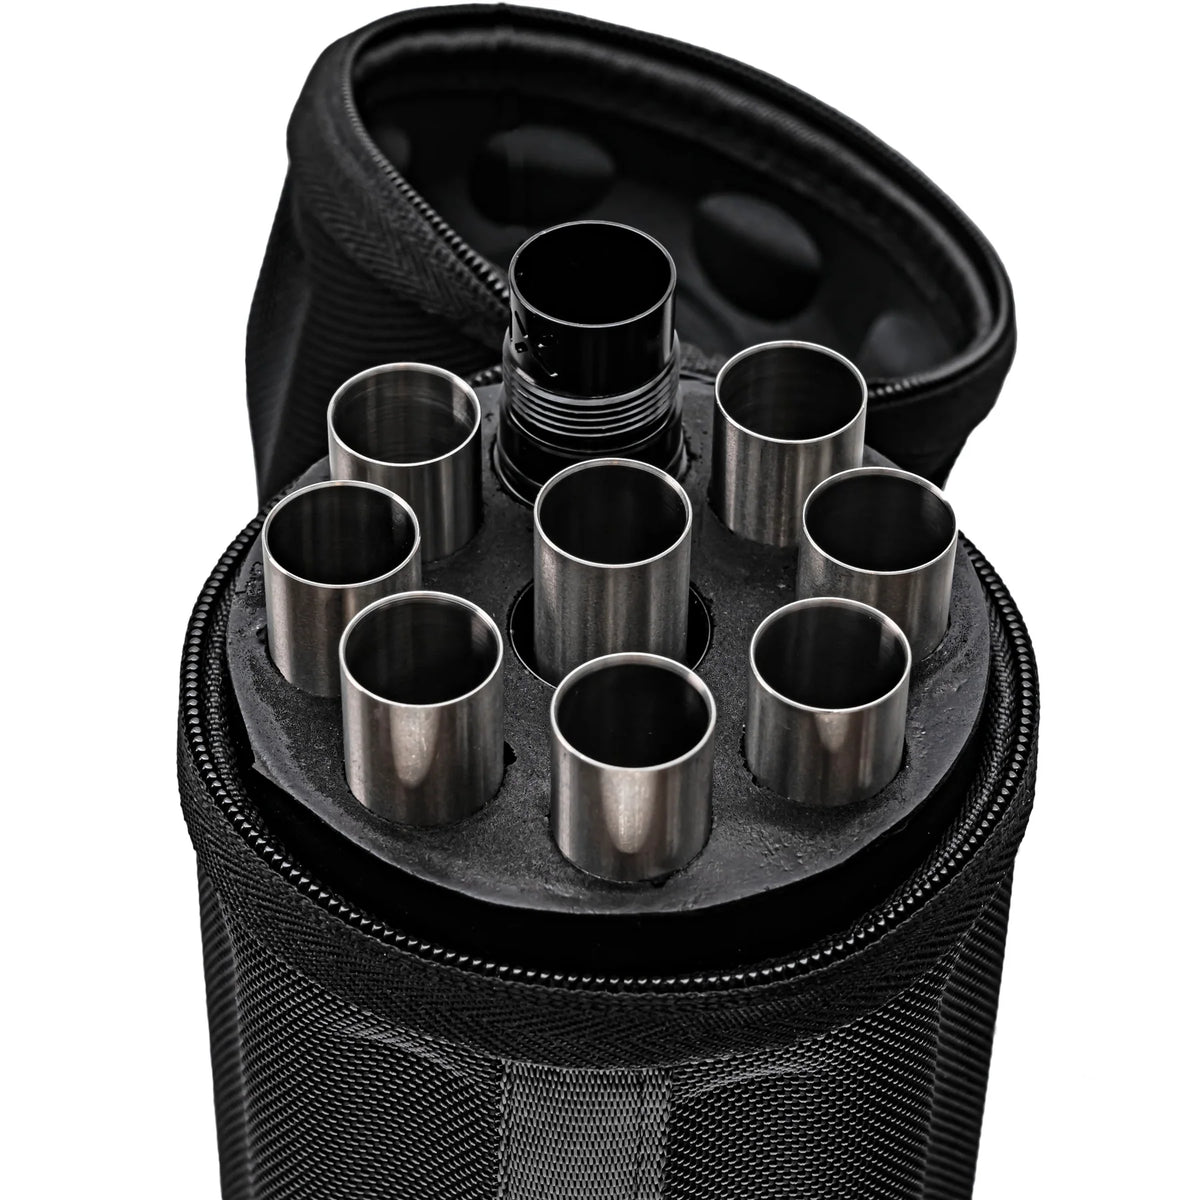 FREAK XL - Full Barrel Kit - Autococker Thread - Stainless Steel